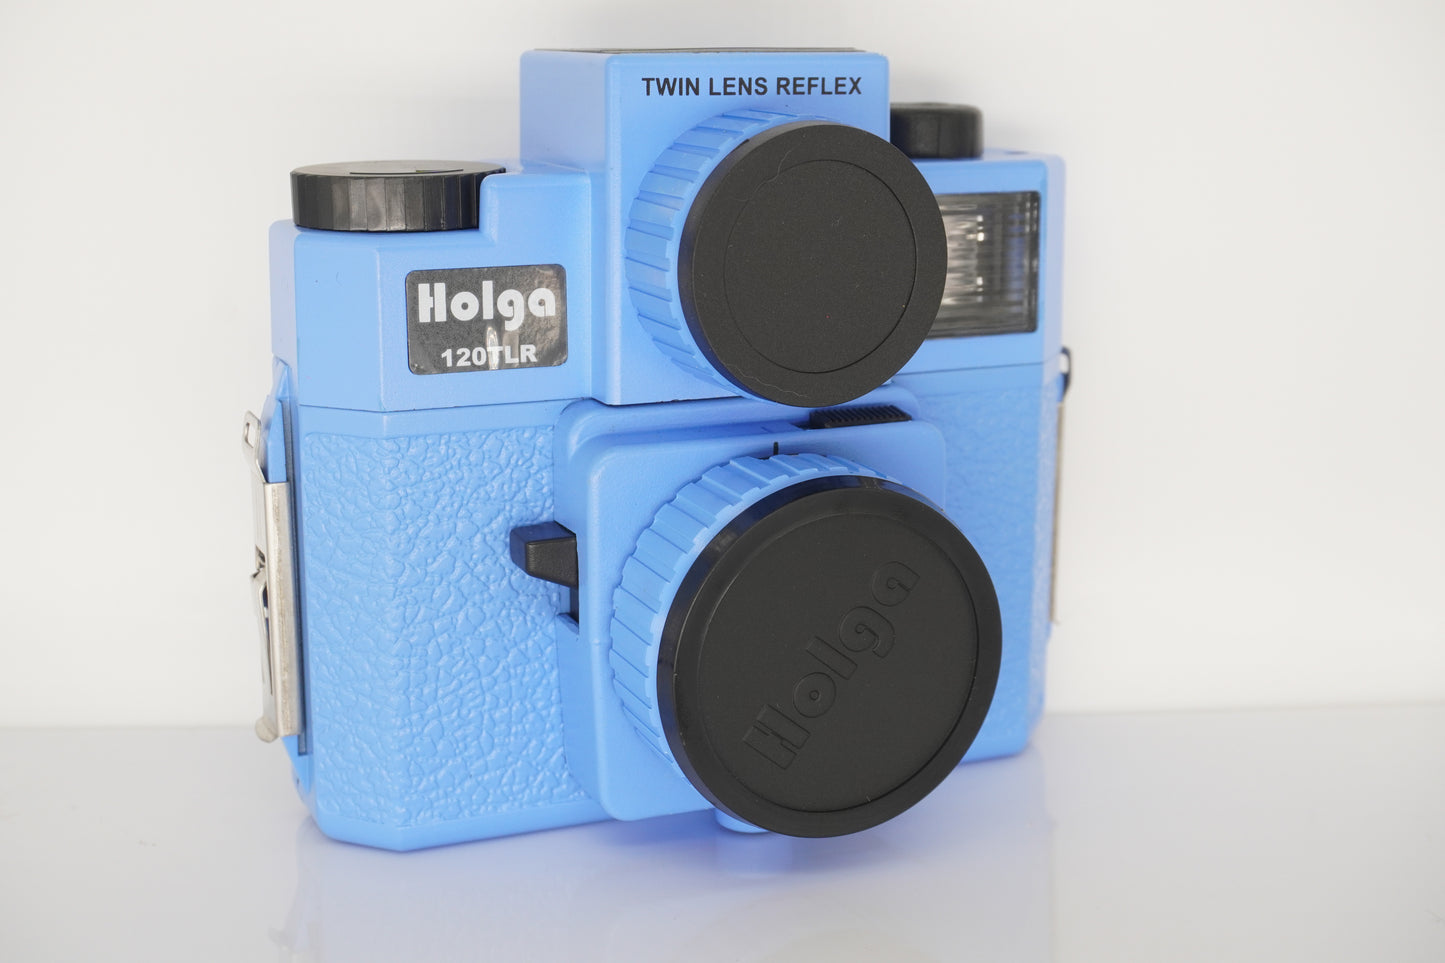 Holga 120 TLR Film Camera